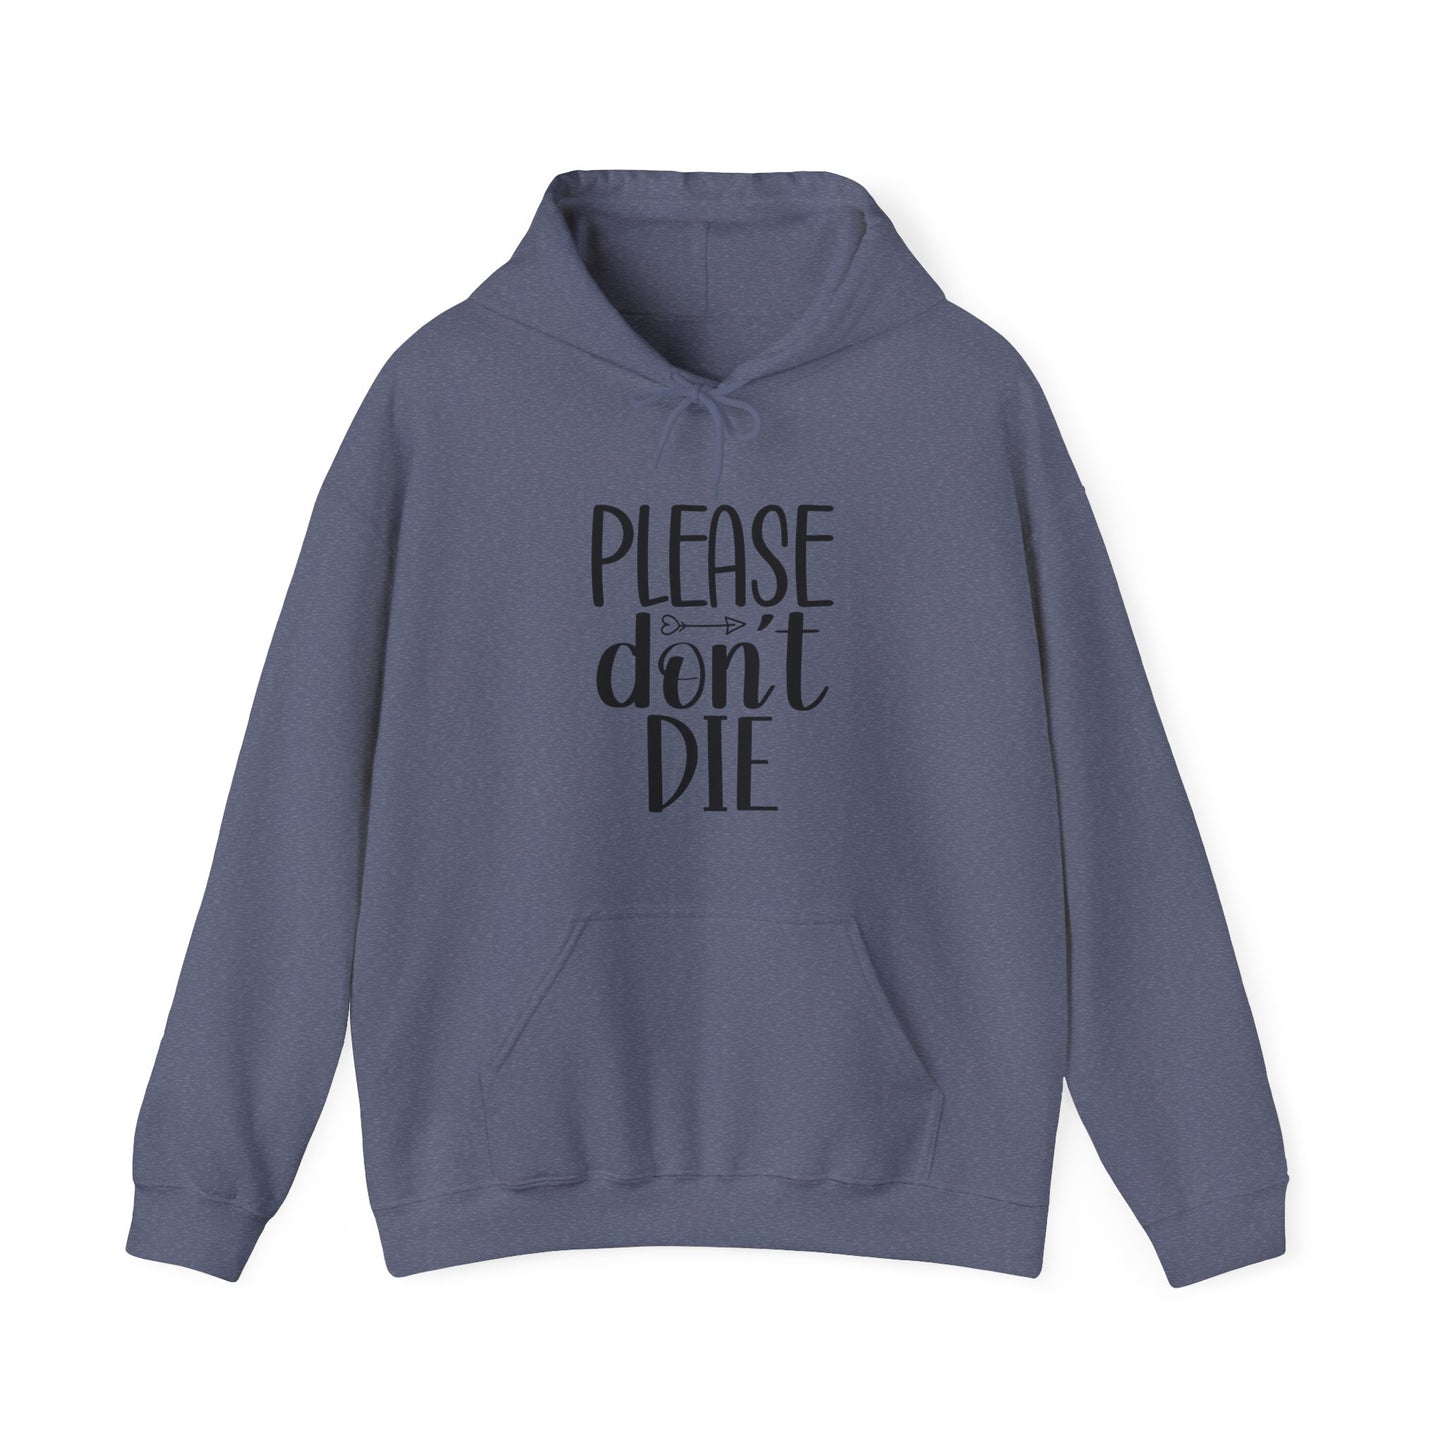 Please Don't Die Hooded Sweatshirt (Unisex)